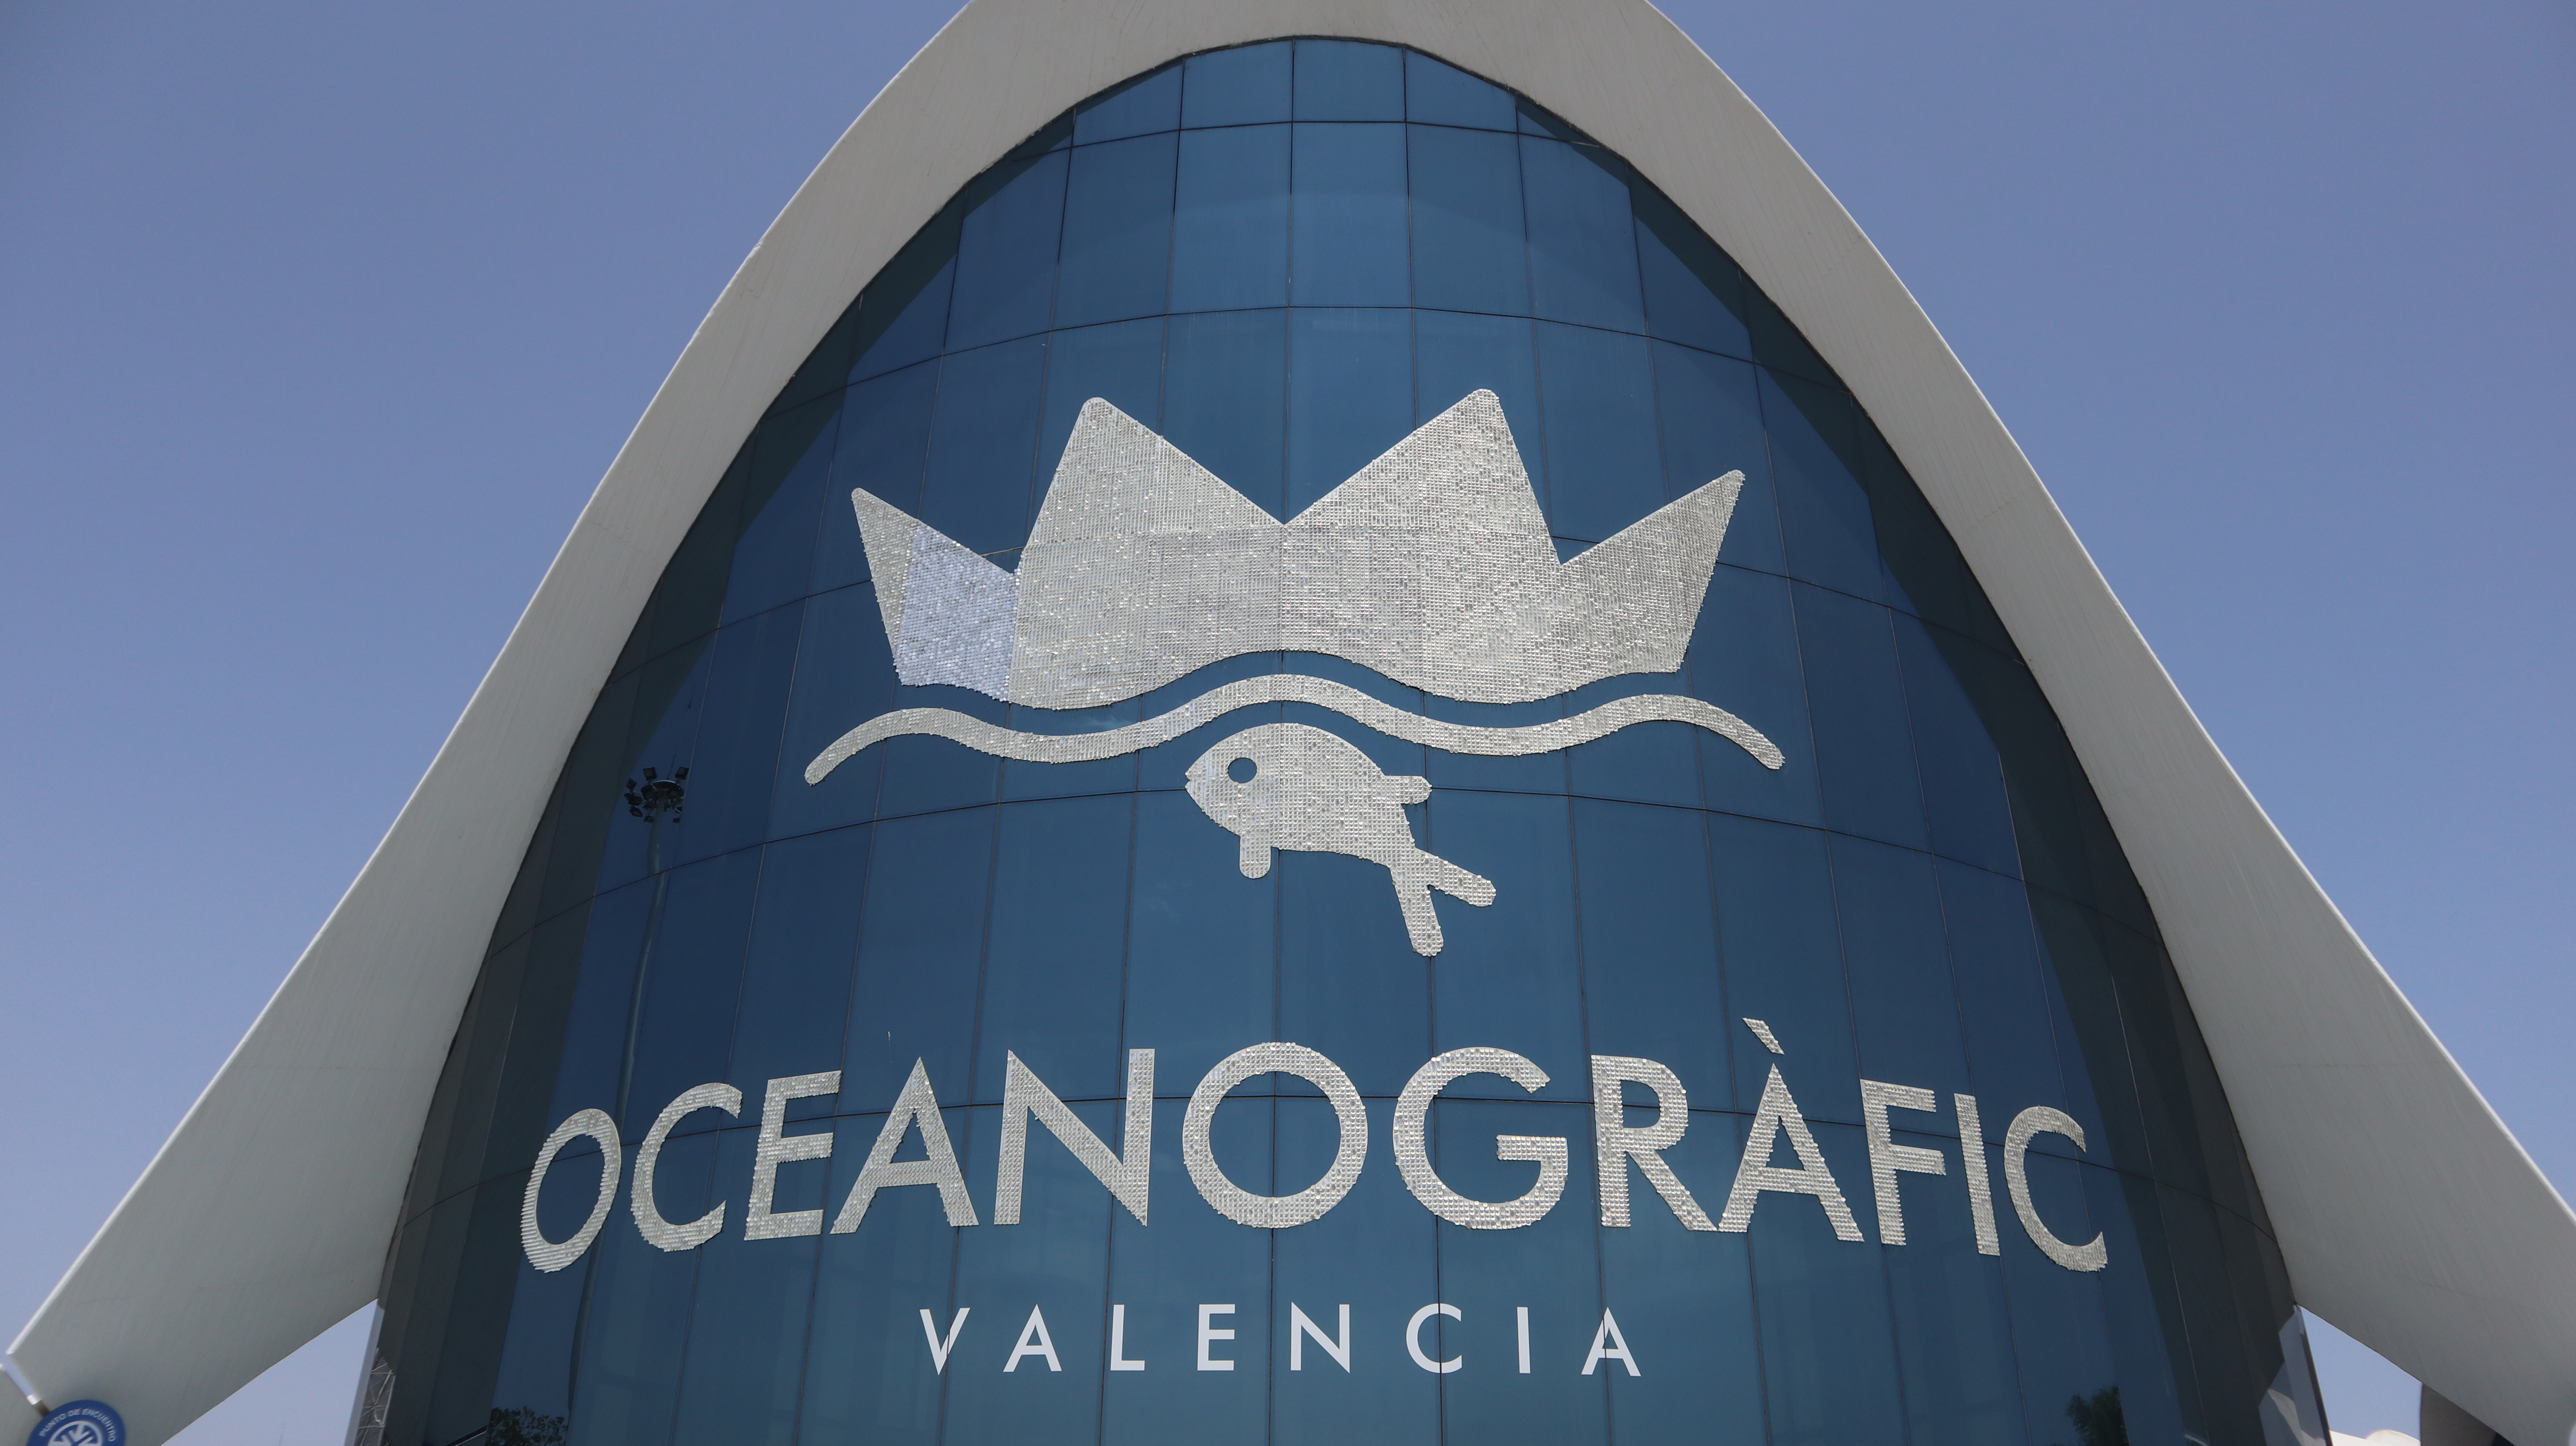 réaliser votre stage à Valencia - Oceanografic